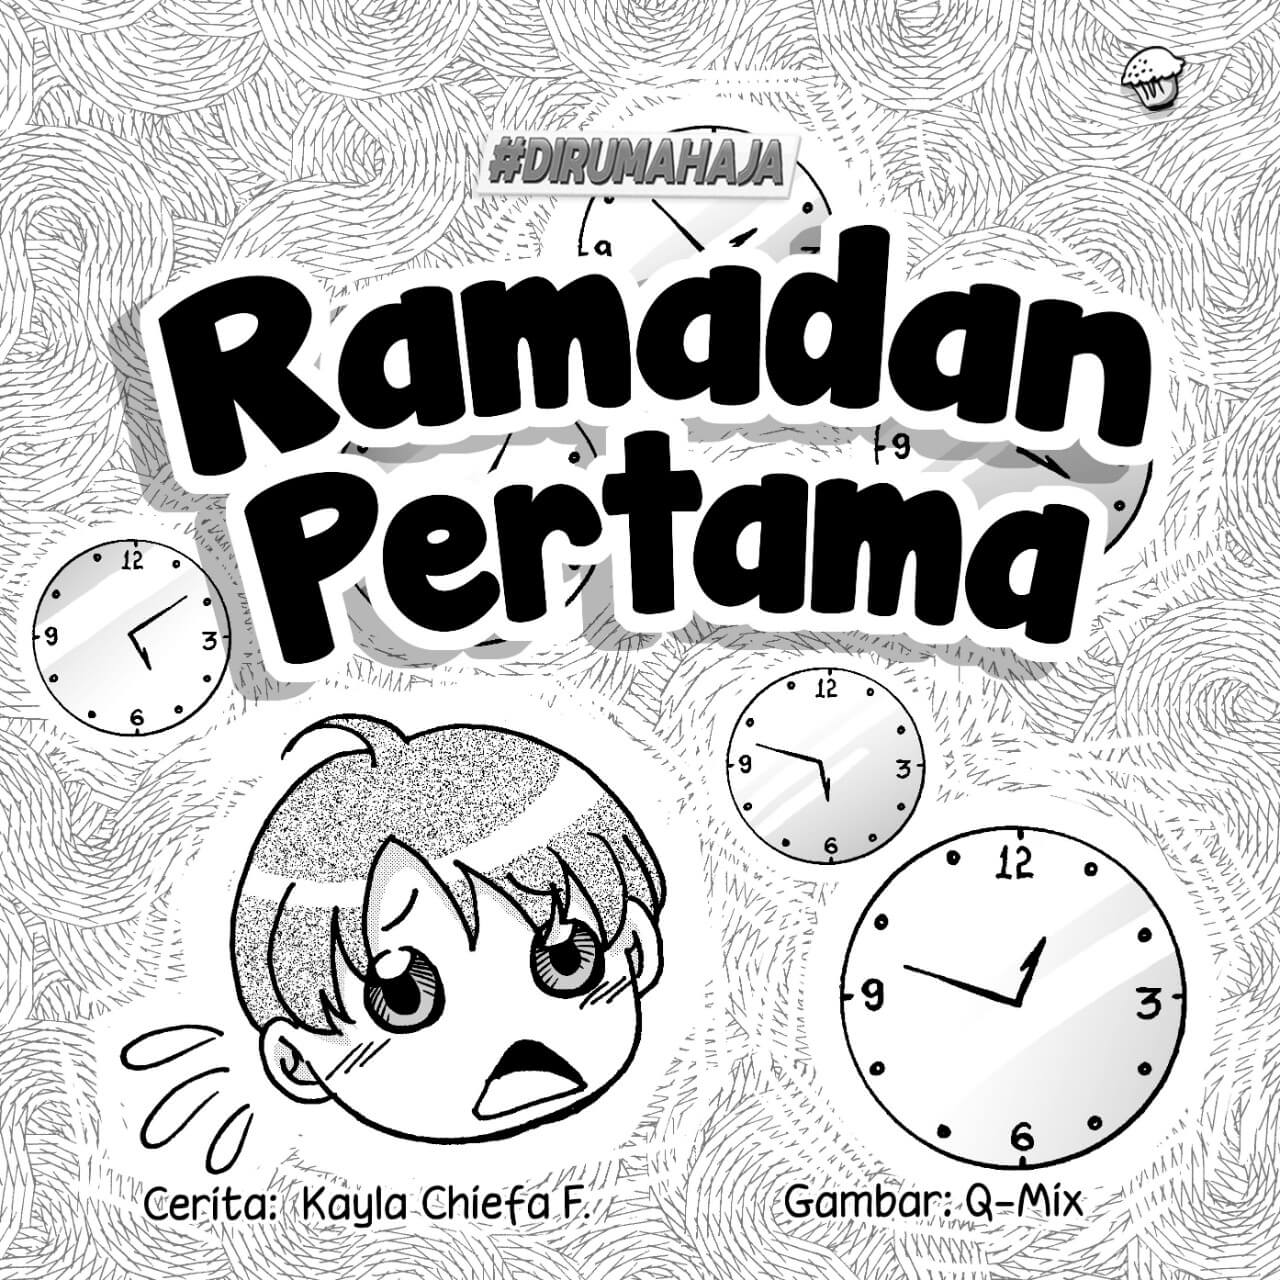 Ramadan pertama cover bw